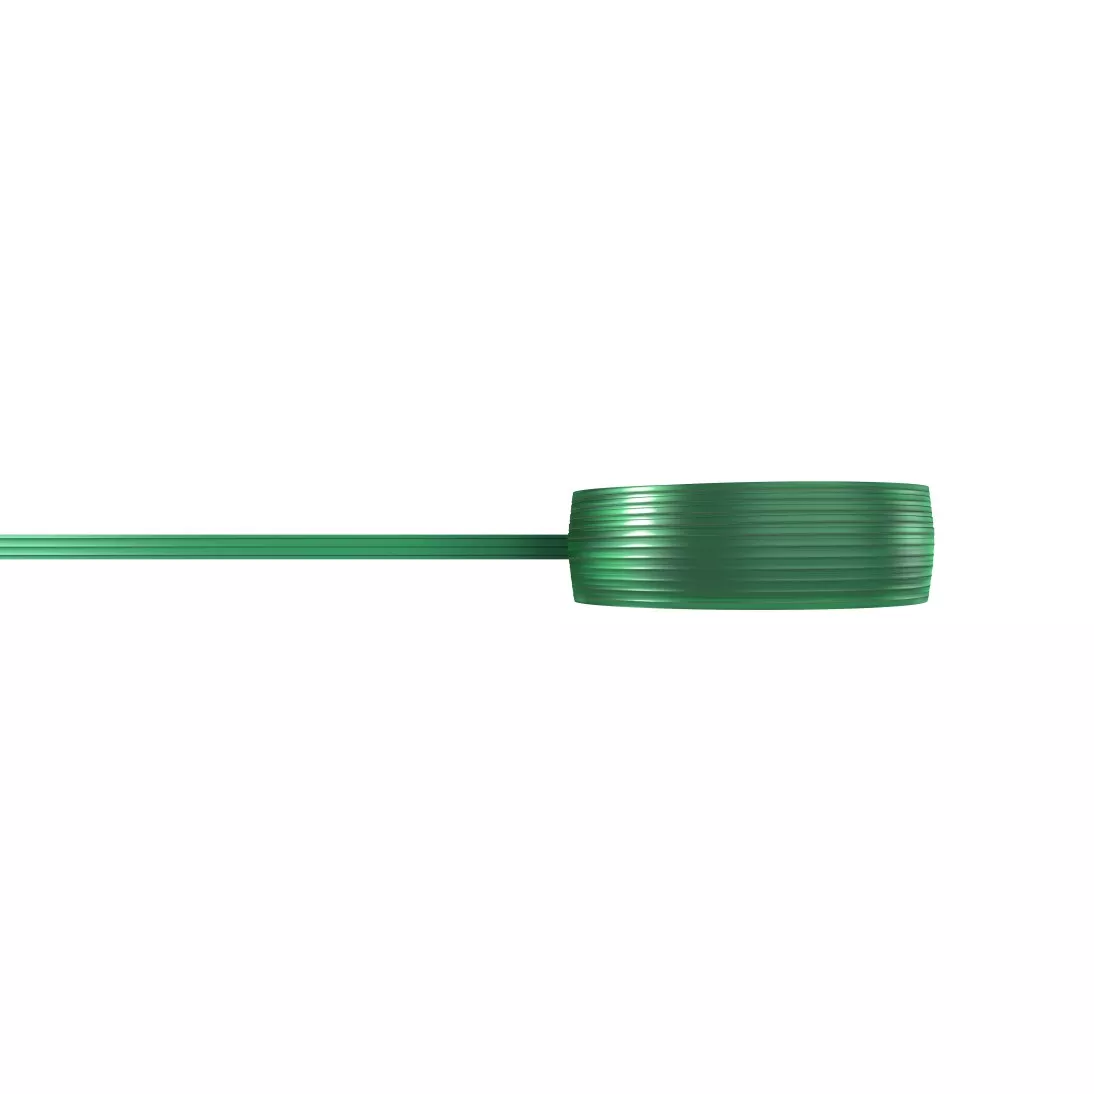 3M™ Tri Line Knifeless Tape, KTS-TL9, Green, 9 mm Spaced Filaments, 9 mm
x 50 m, 10/Case